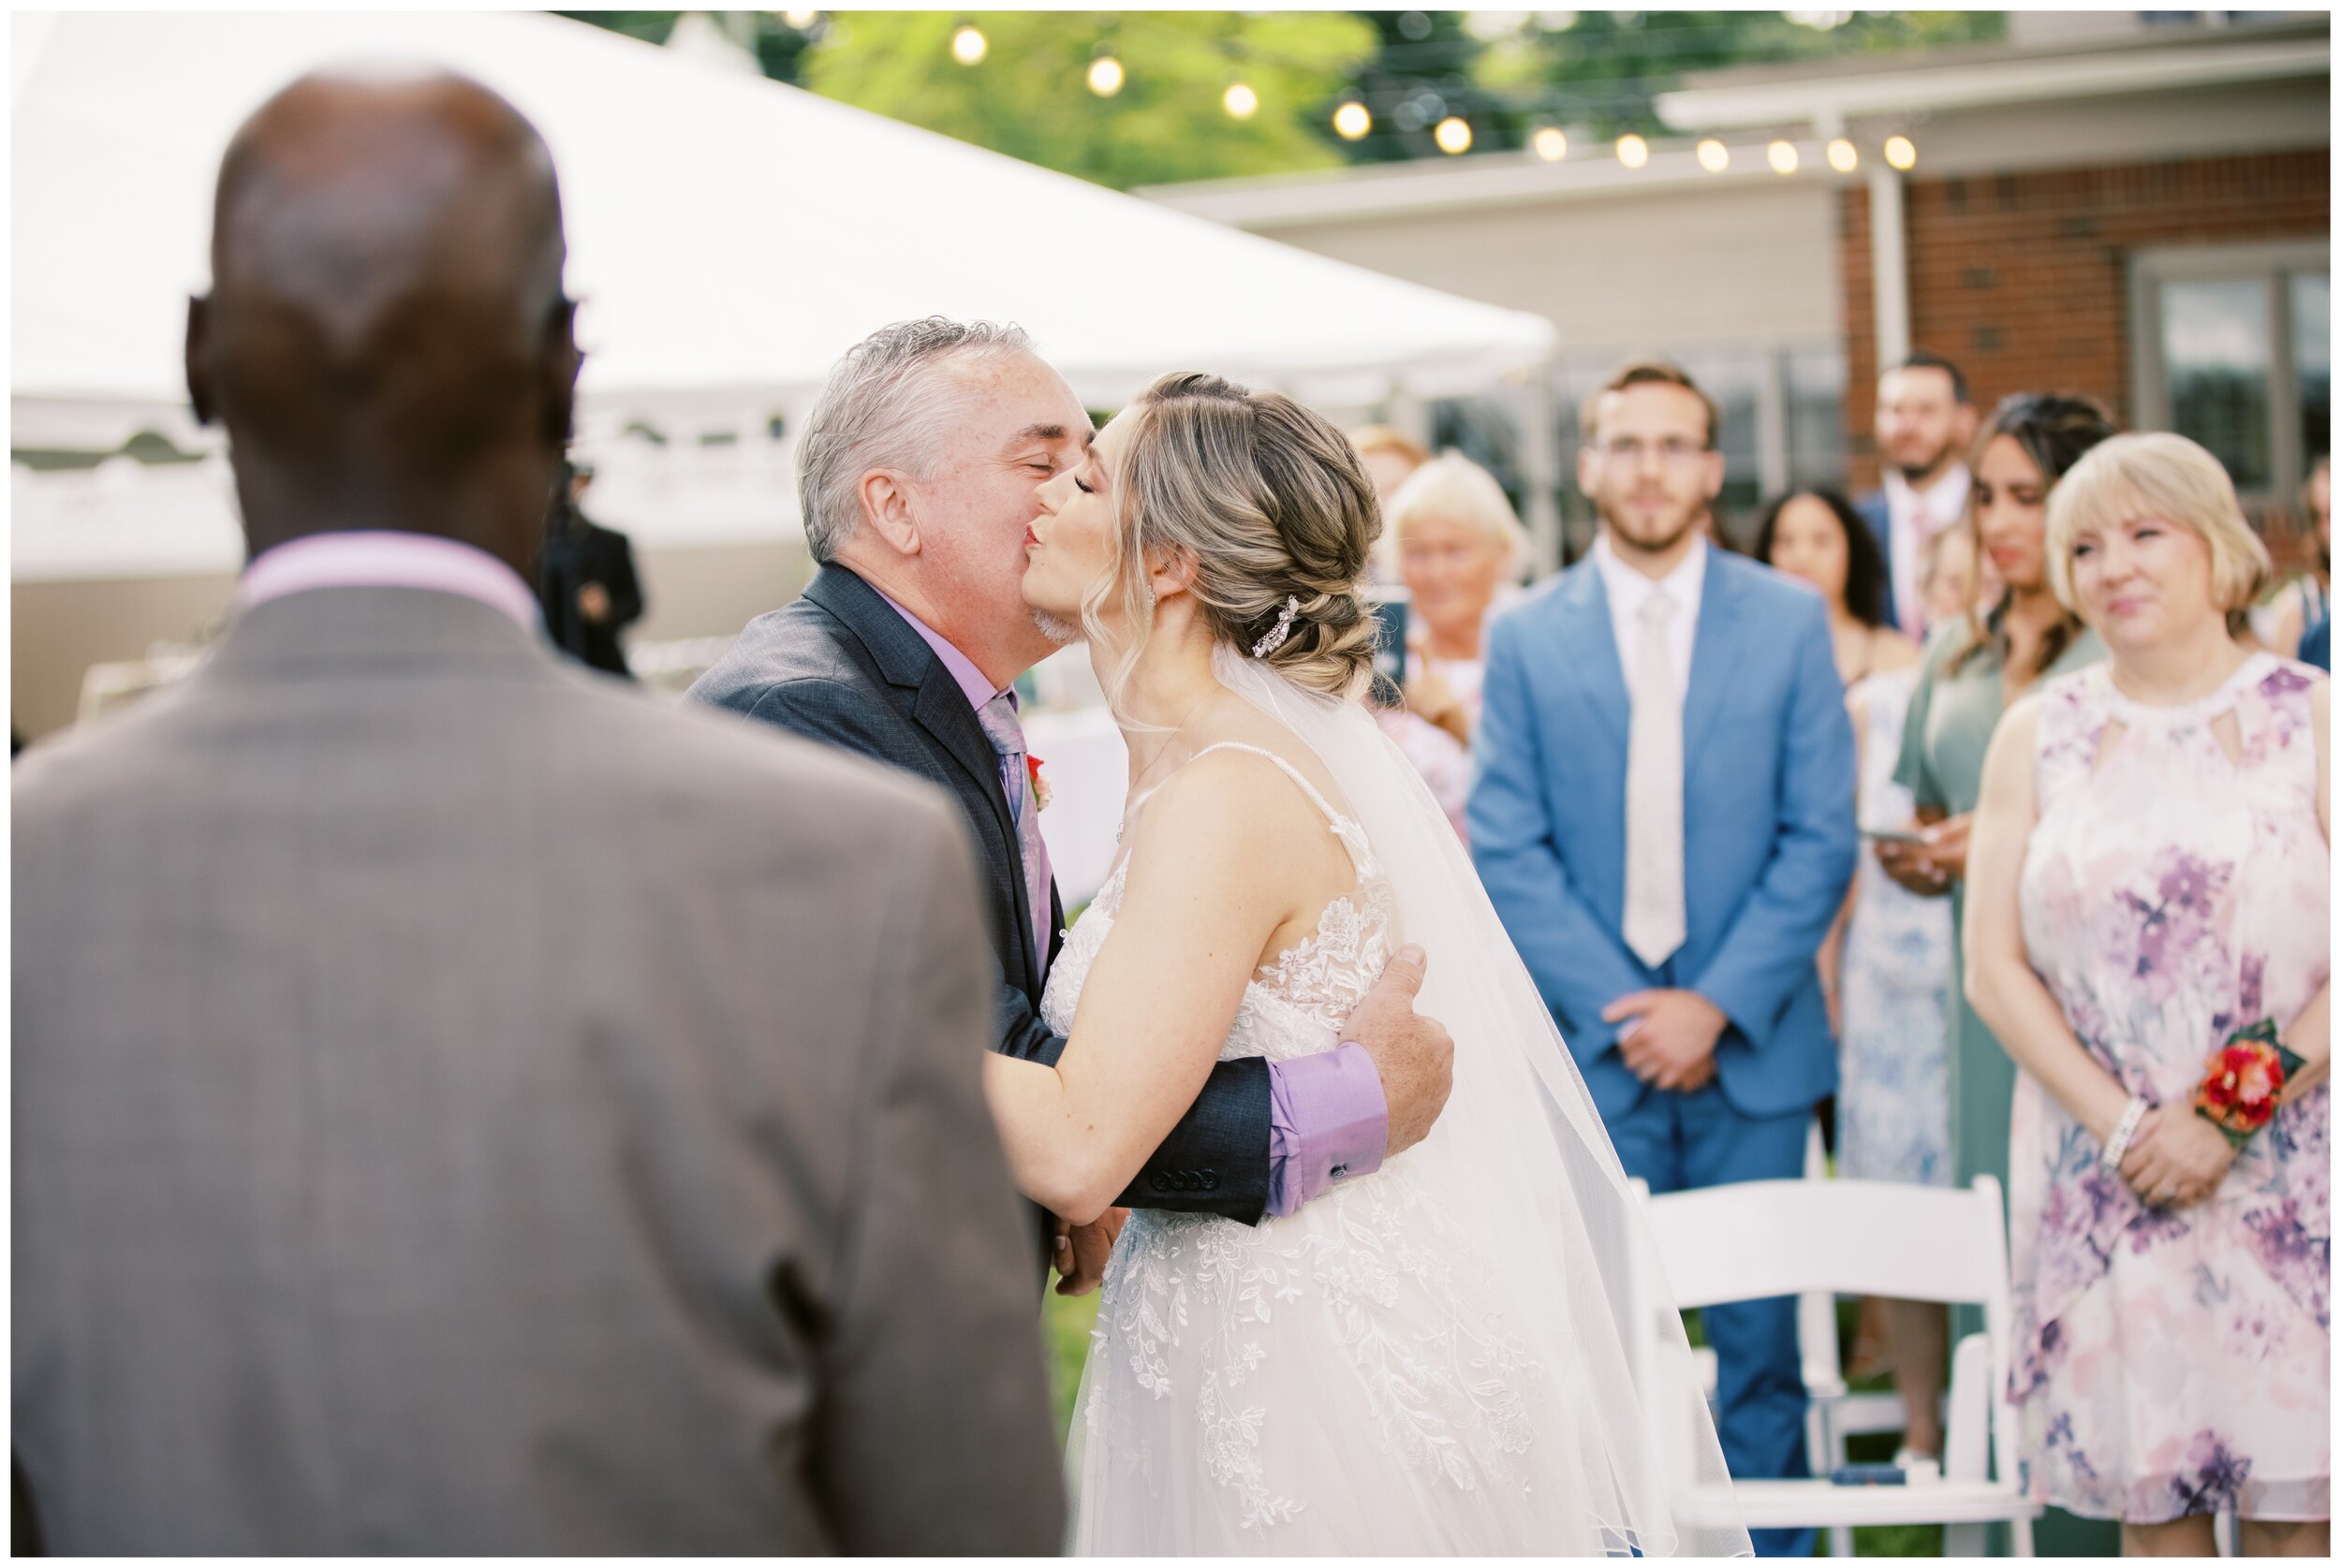 Laura + Mike - West Hartford Wedding_0057.jpg